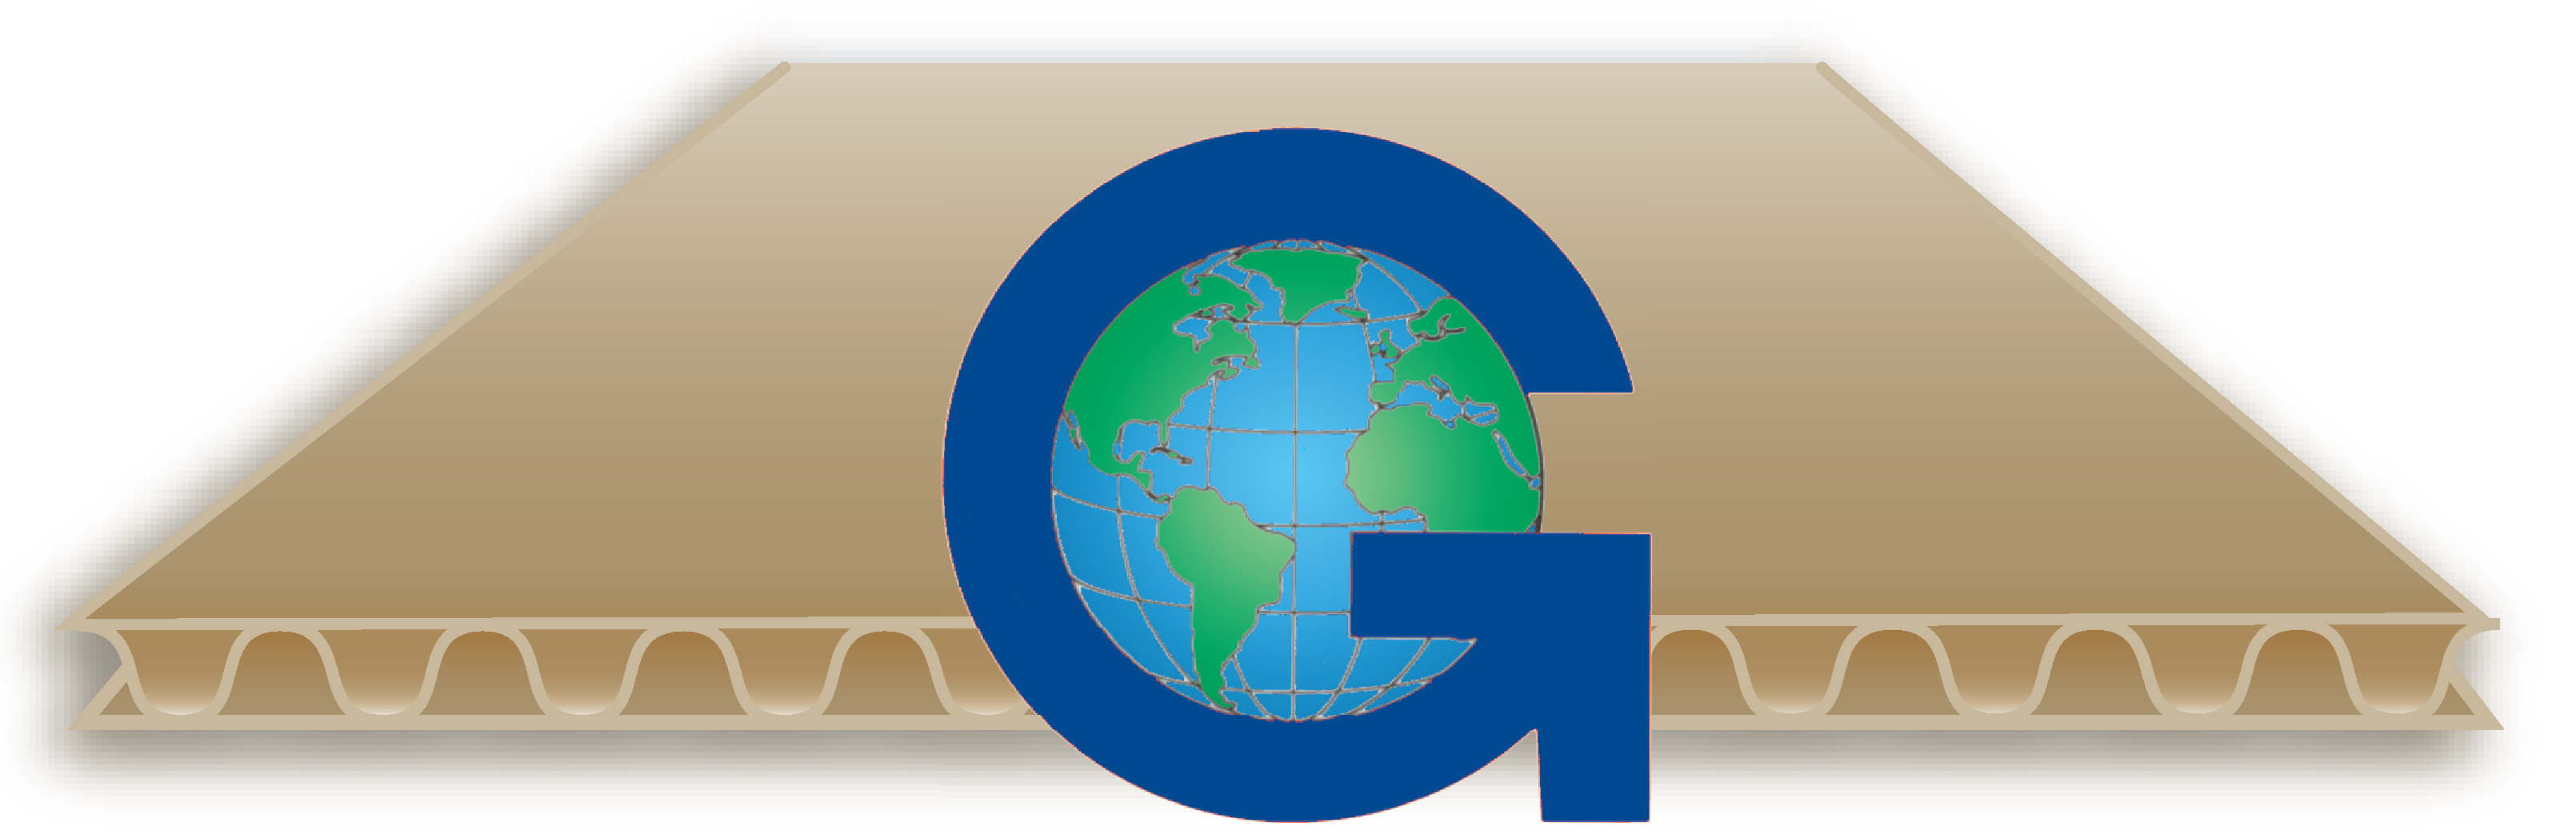 Goettsch International Repuestos para la Industria del Corrugado